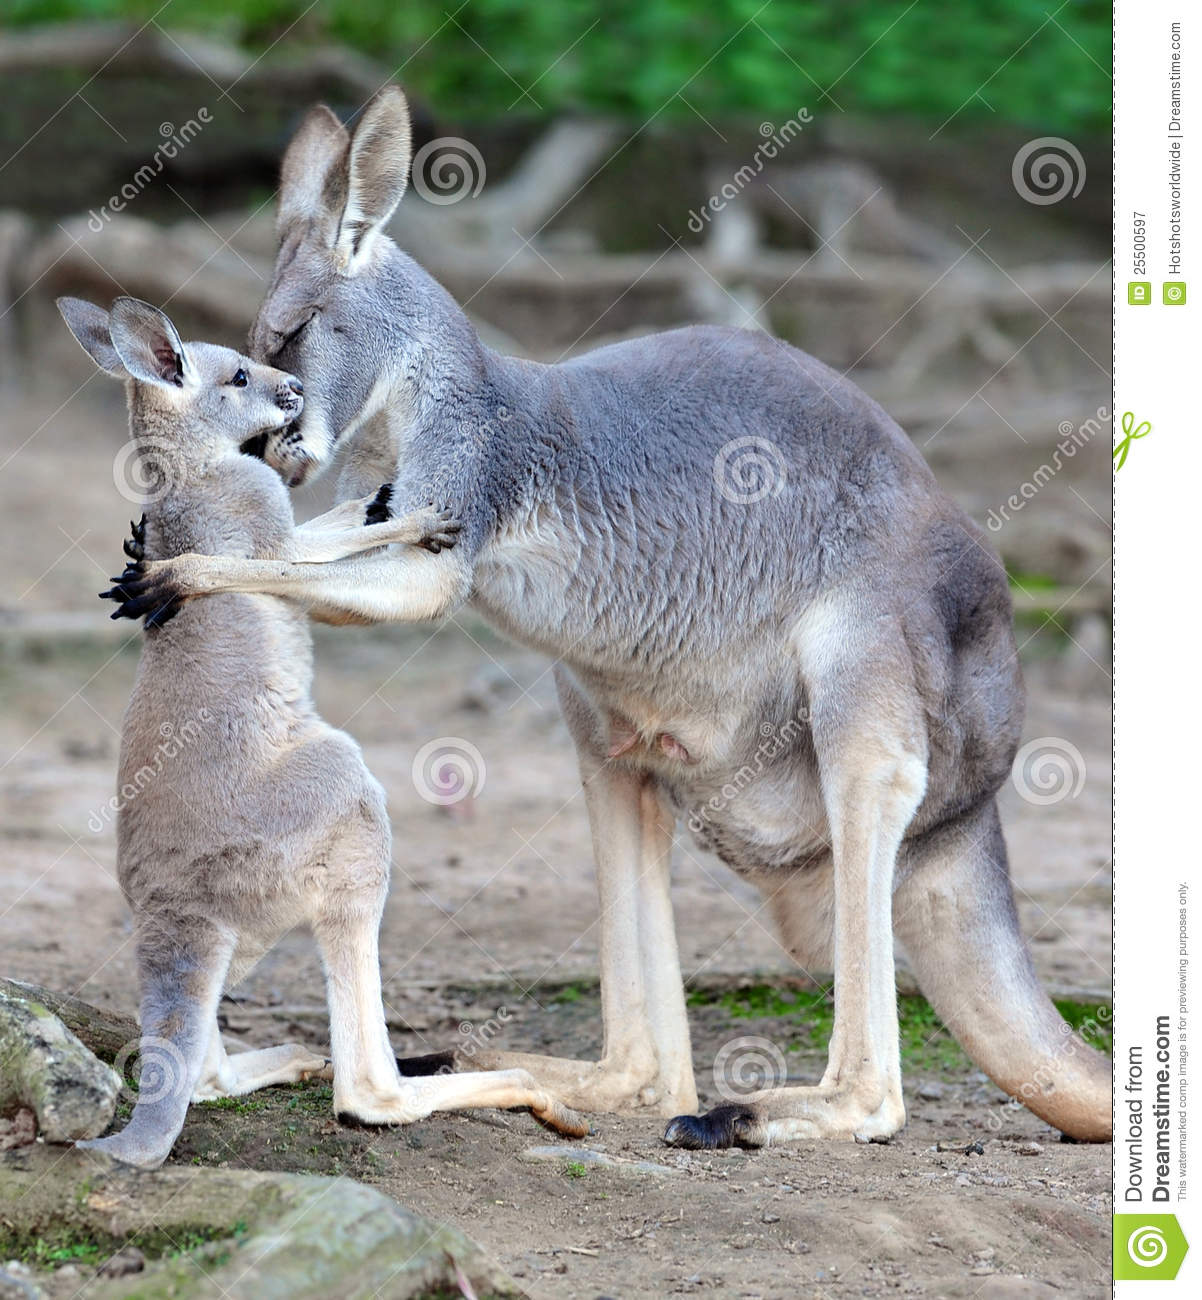 australian-grey-kangaroo-embraces-baby-joey-25500597.jpg